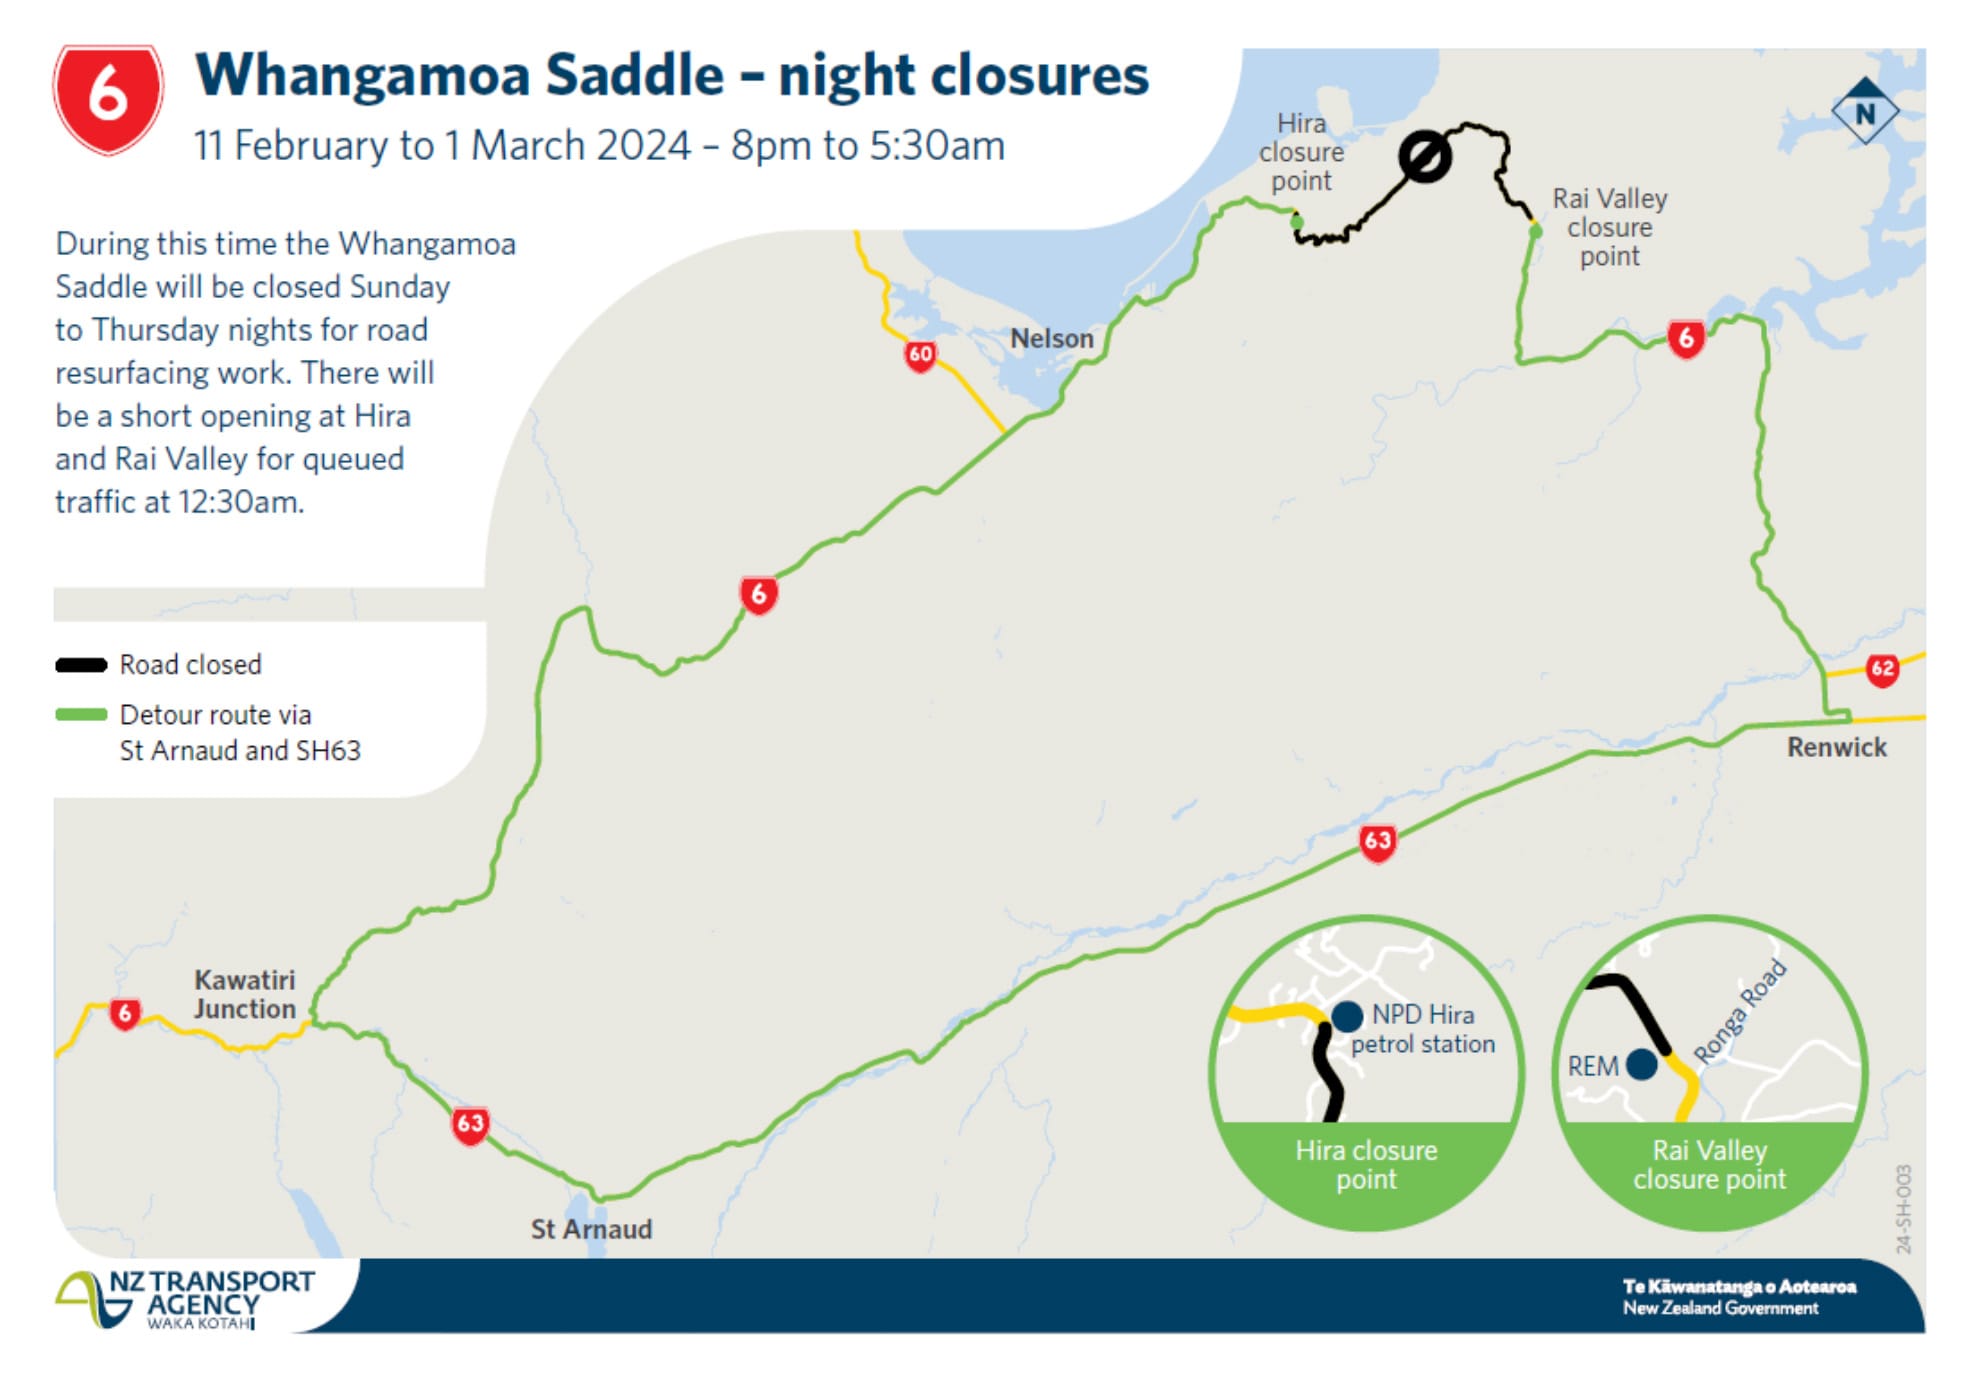 Whangamoa Saddle SH6 night closures in February